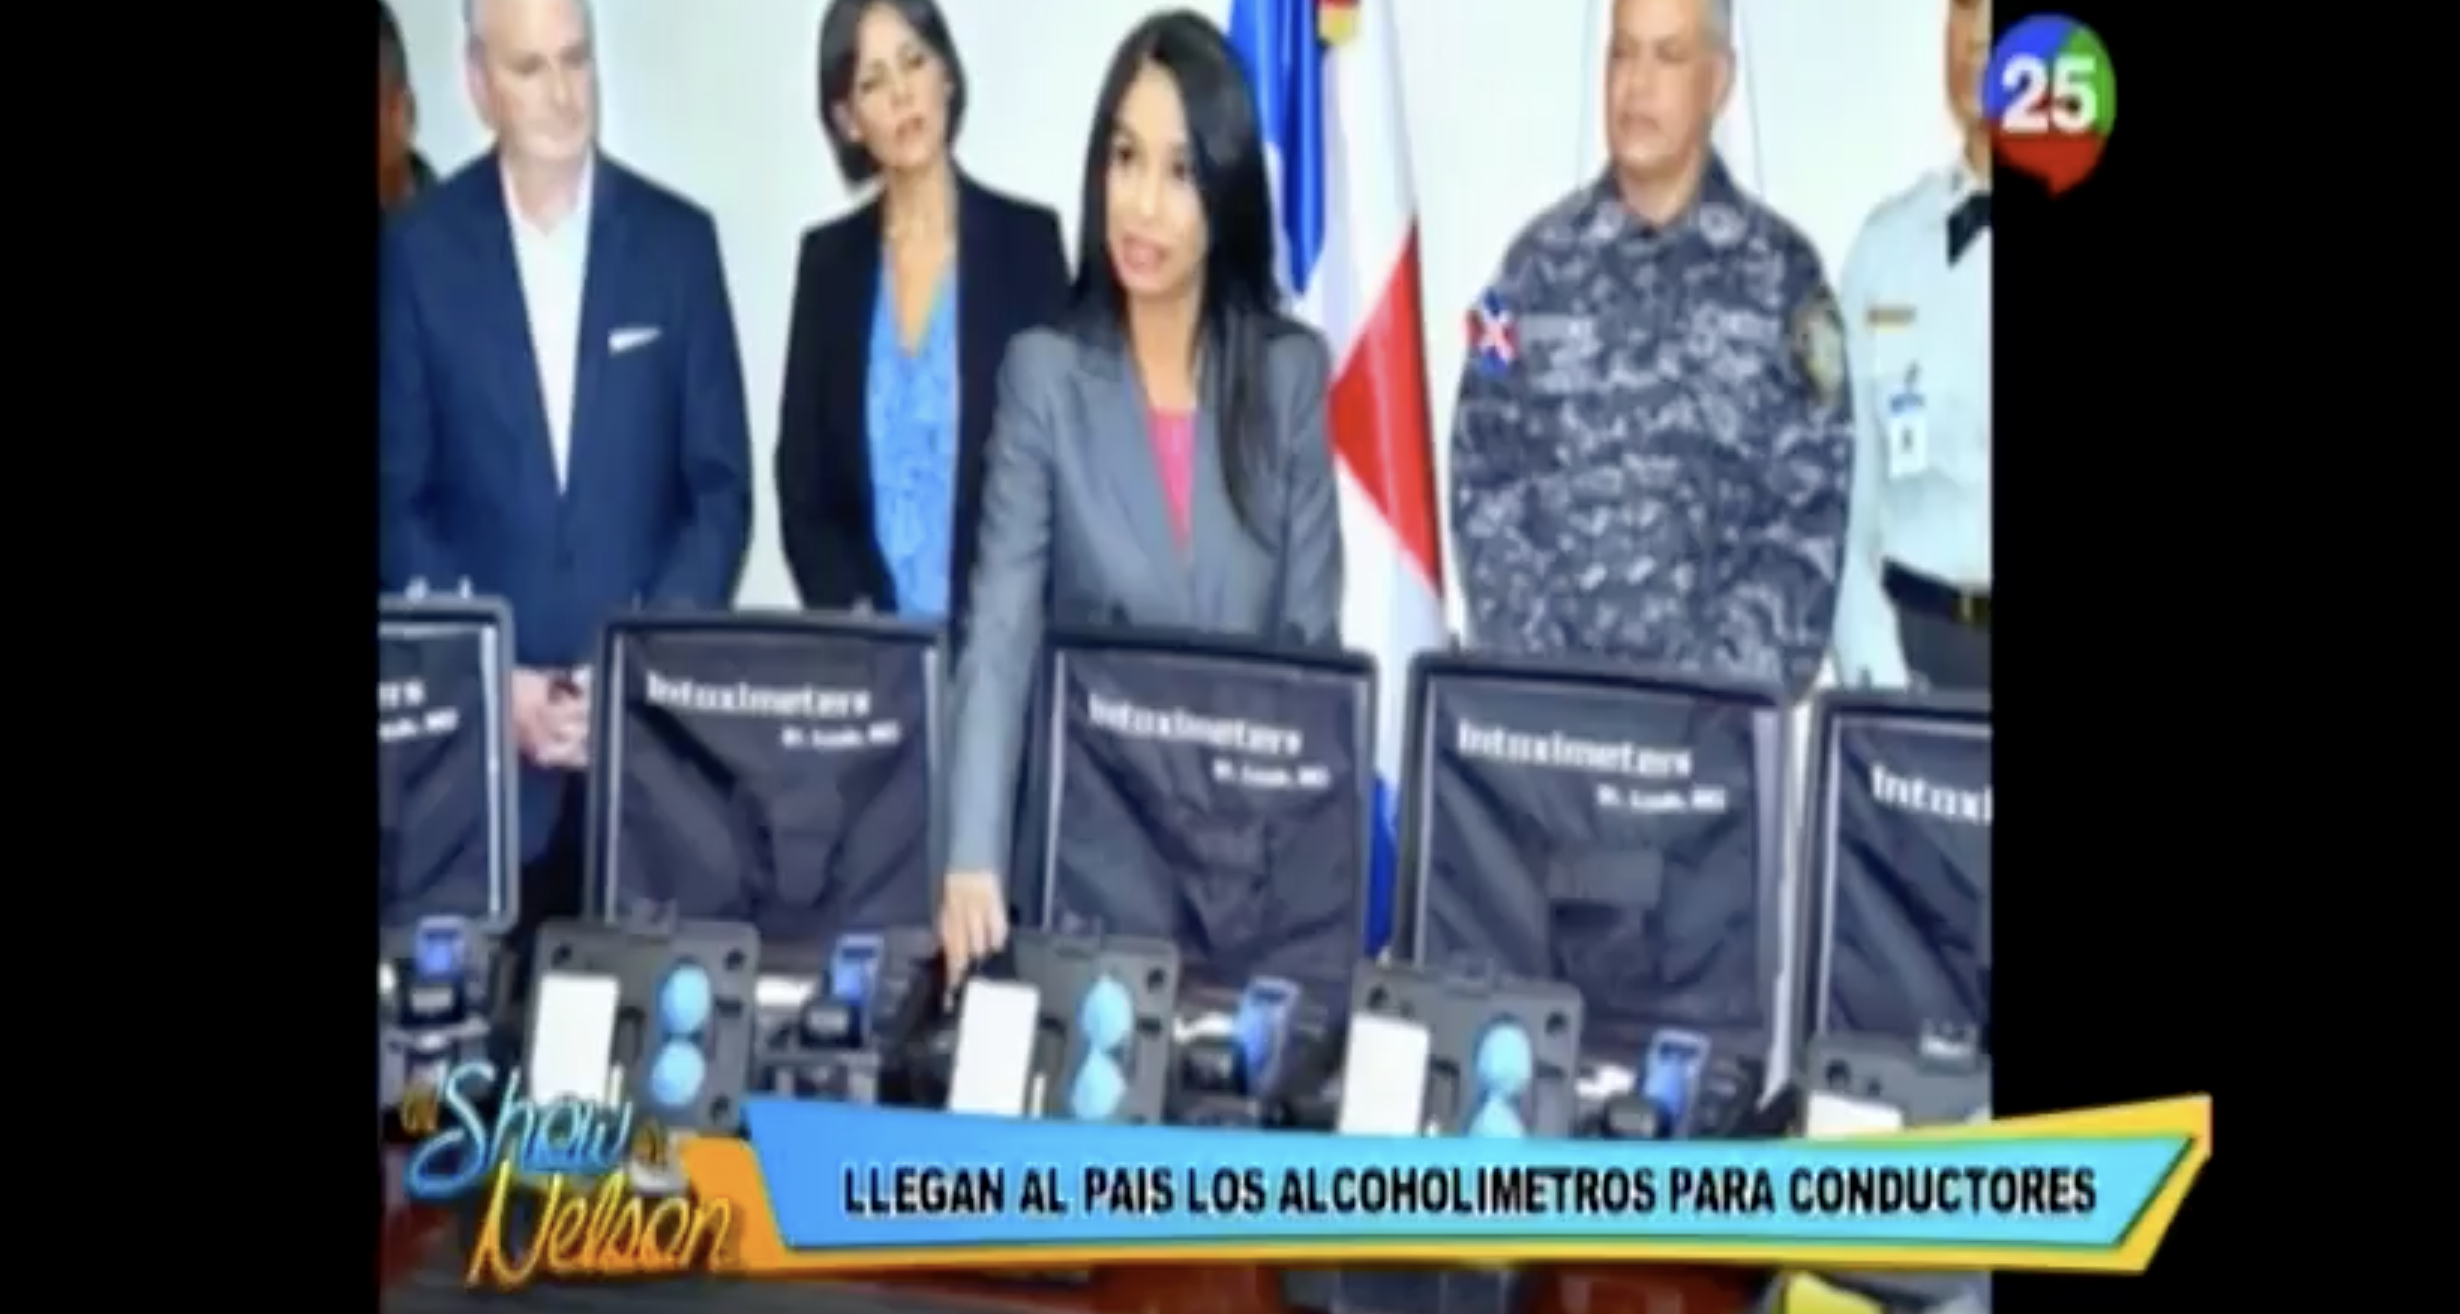 Nelson Javier Interactua Con Los Televidentes Sobre La Llegada De Alcoholimetros Al País